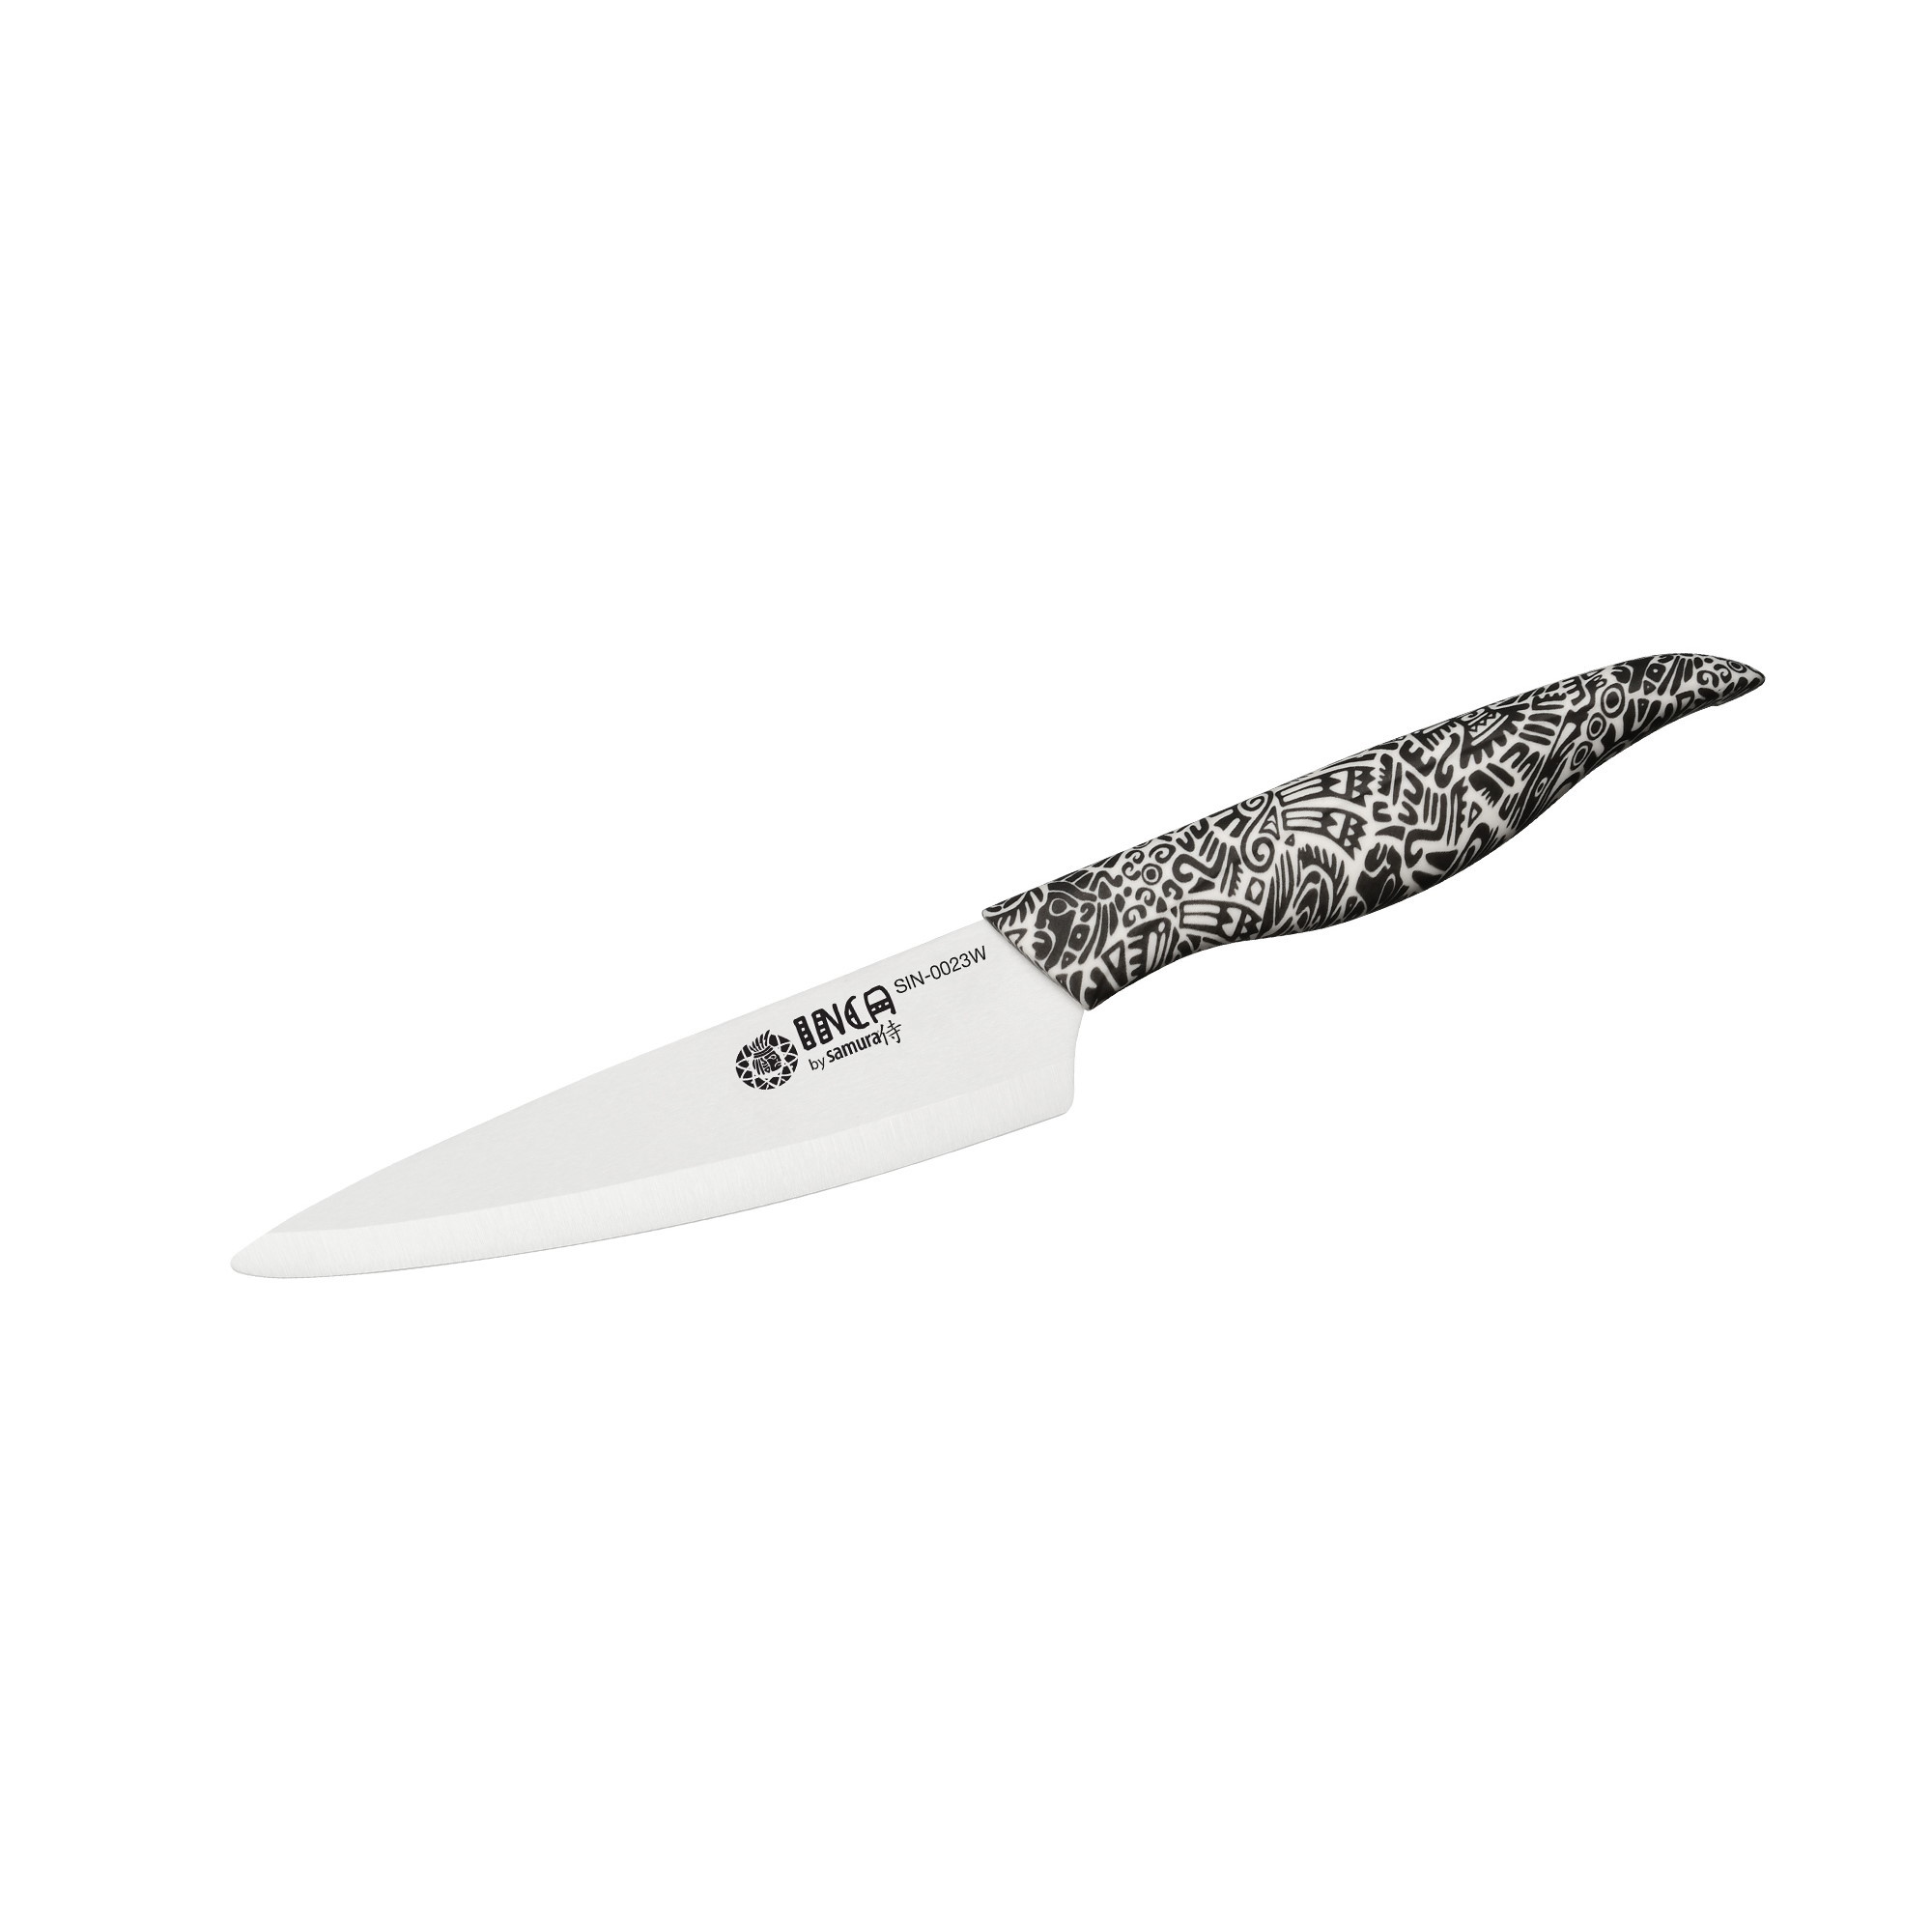 Нож кухонный универсальный Samura Inca 155 мм, белая циркониевая керамика, рукоять пластик